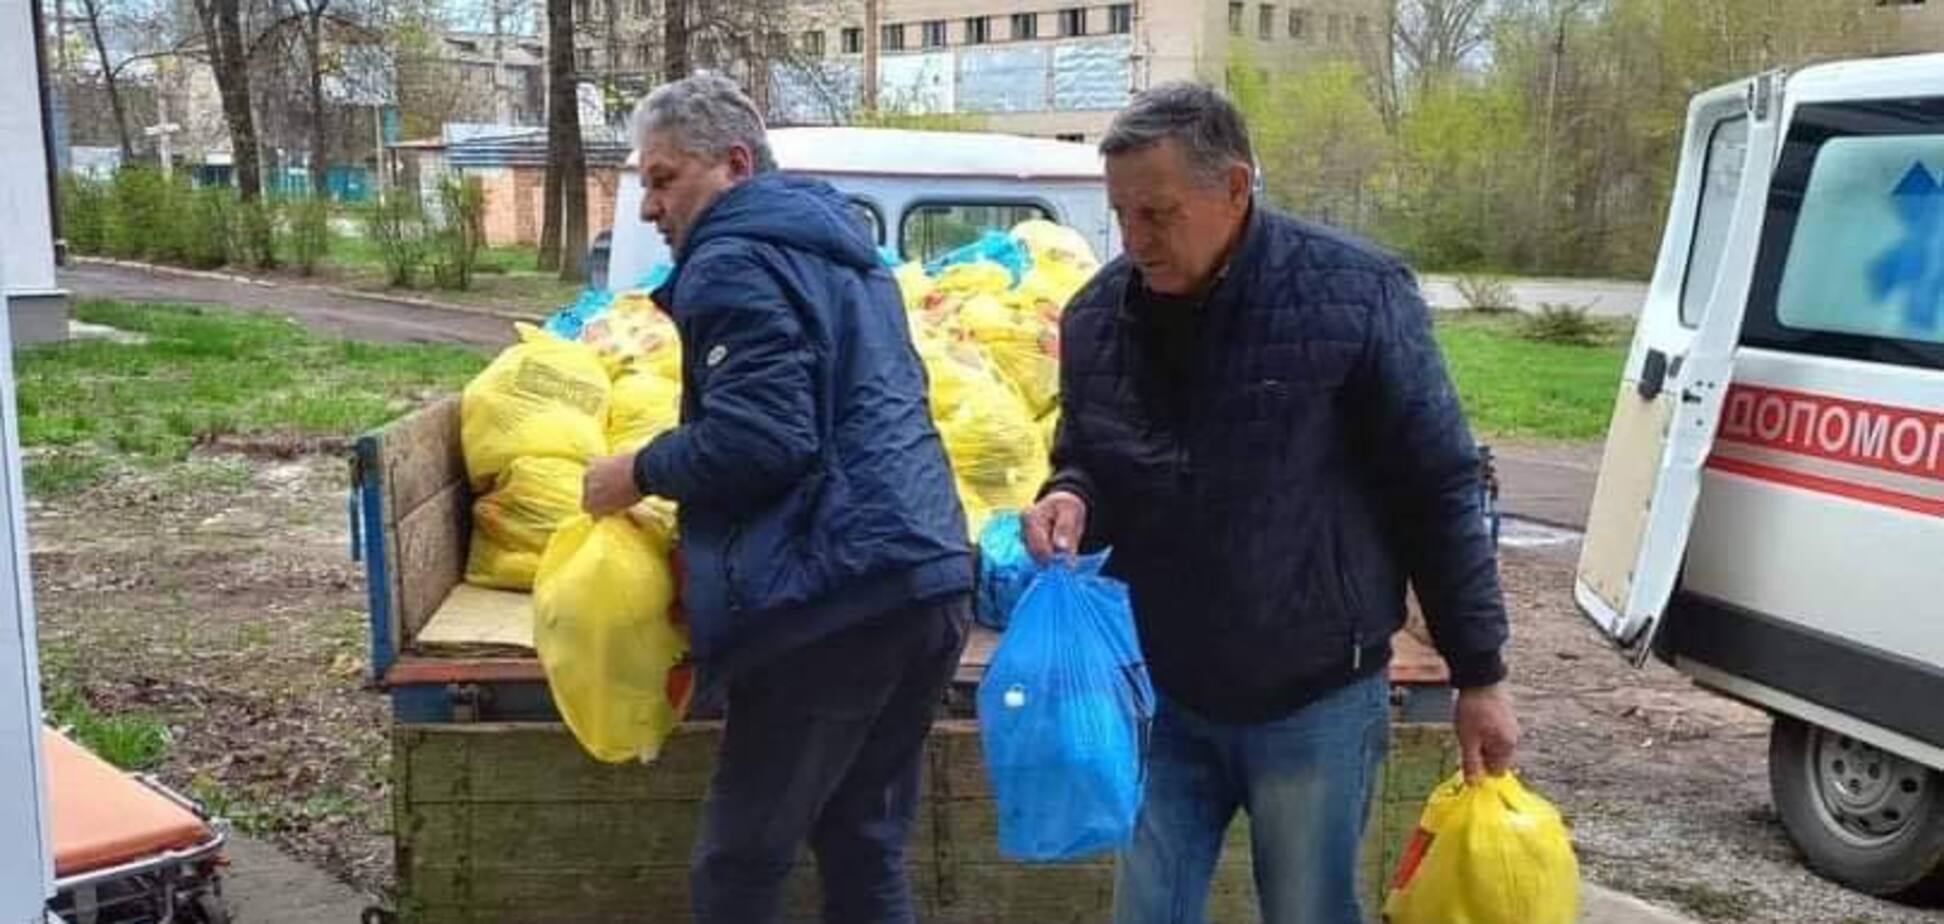 Фонд Бориса Колесникова продолжает снабжать общины продуктовыми наборами и гуманитарной помощью